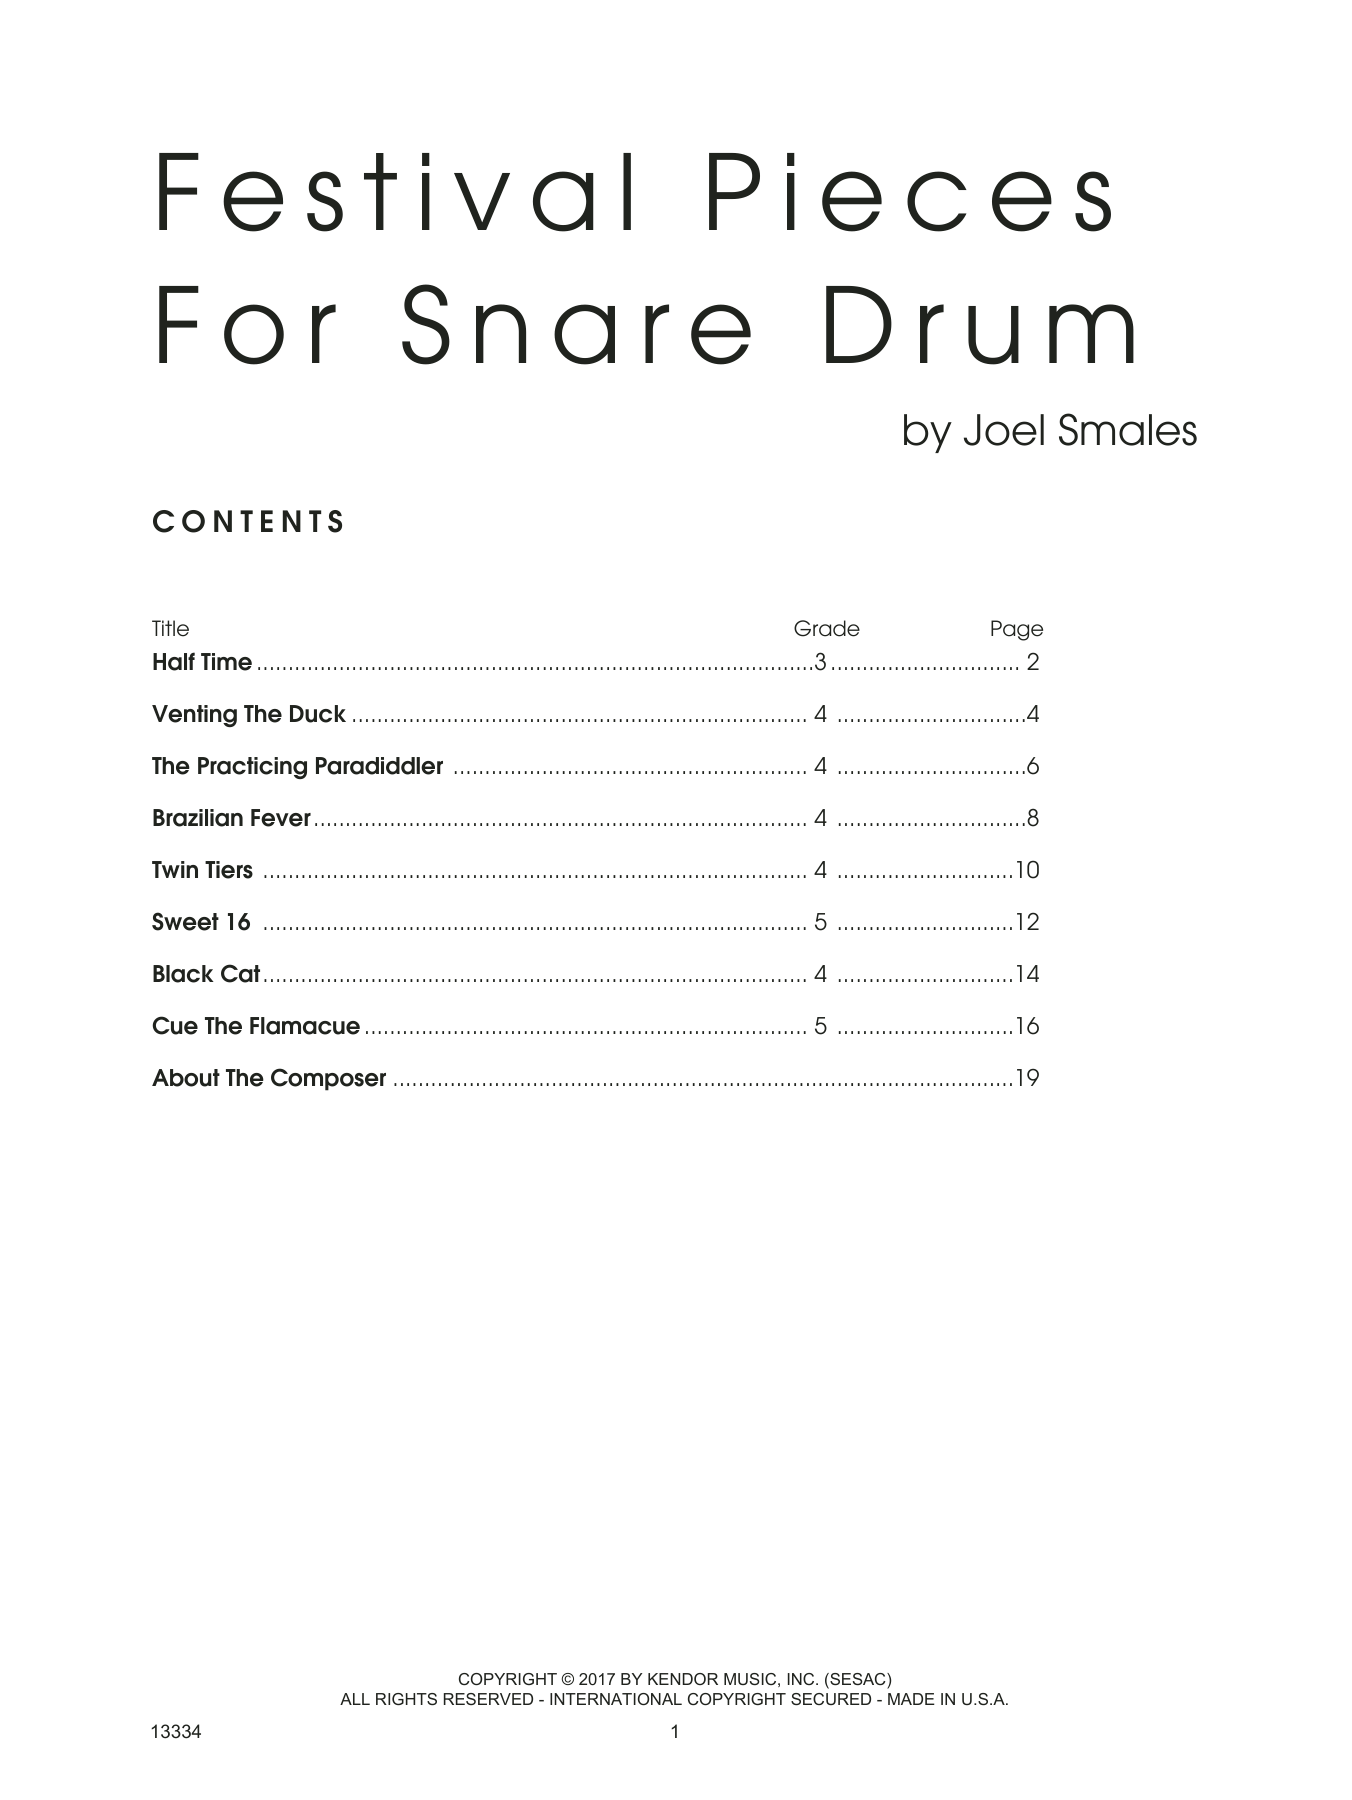 Festival Pieces For Snare Drum (Percussion Solo) von Joel Smales